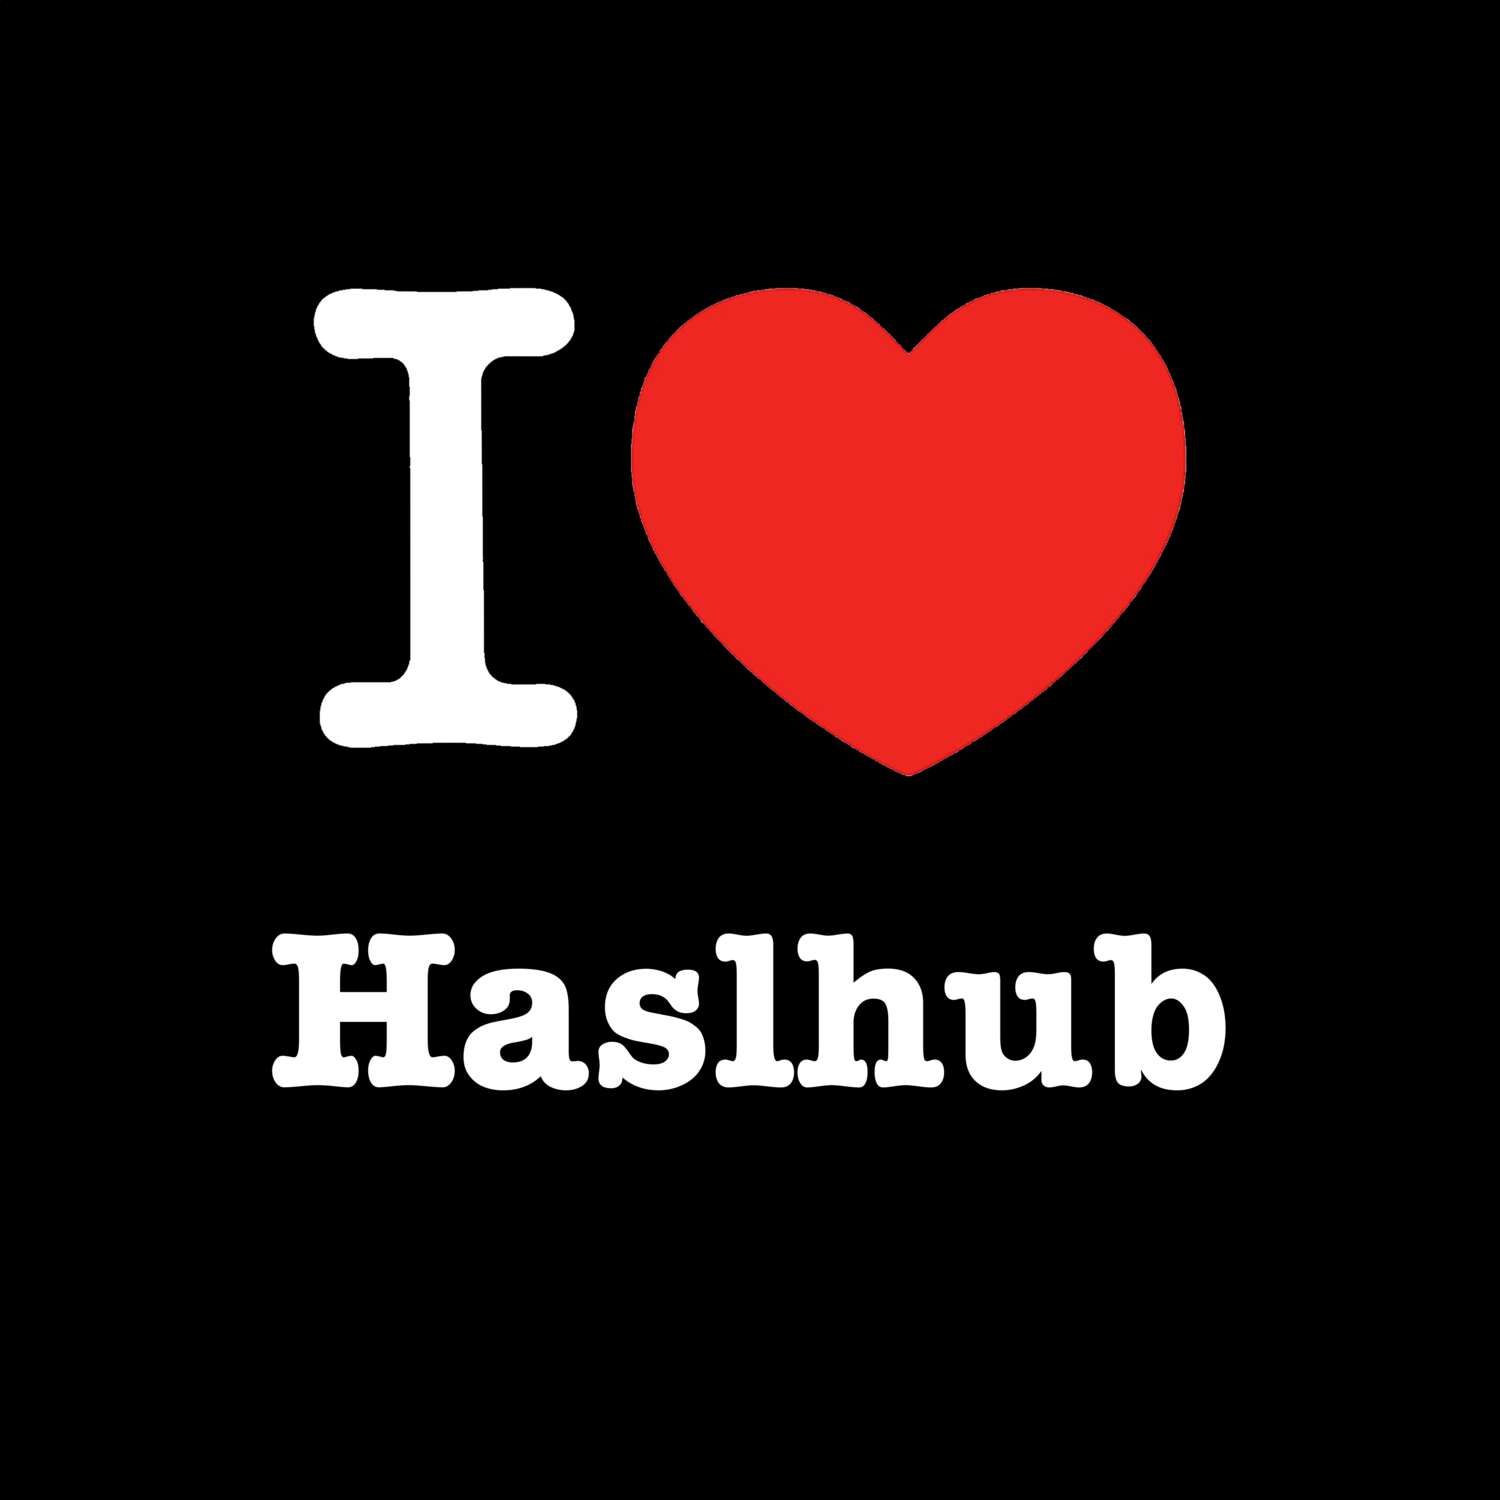 Haslhub T-Shirt »I love«